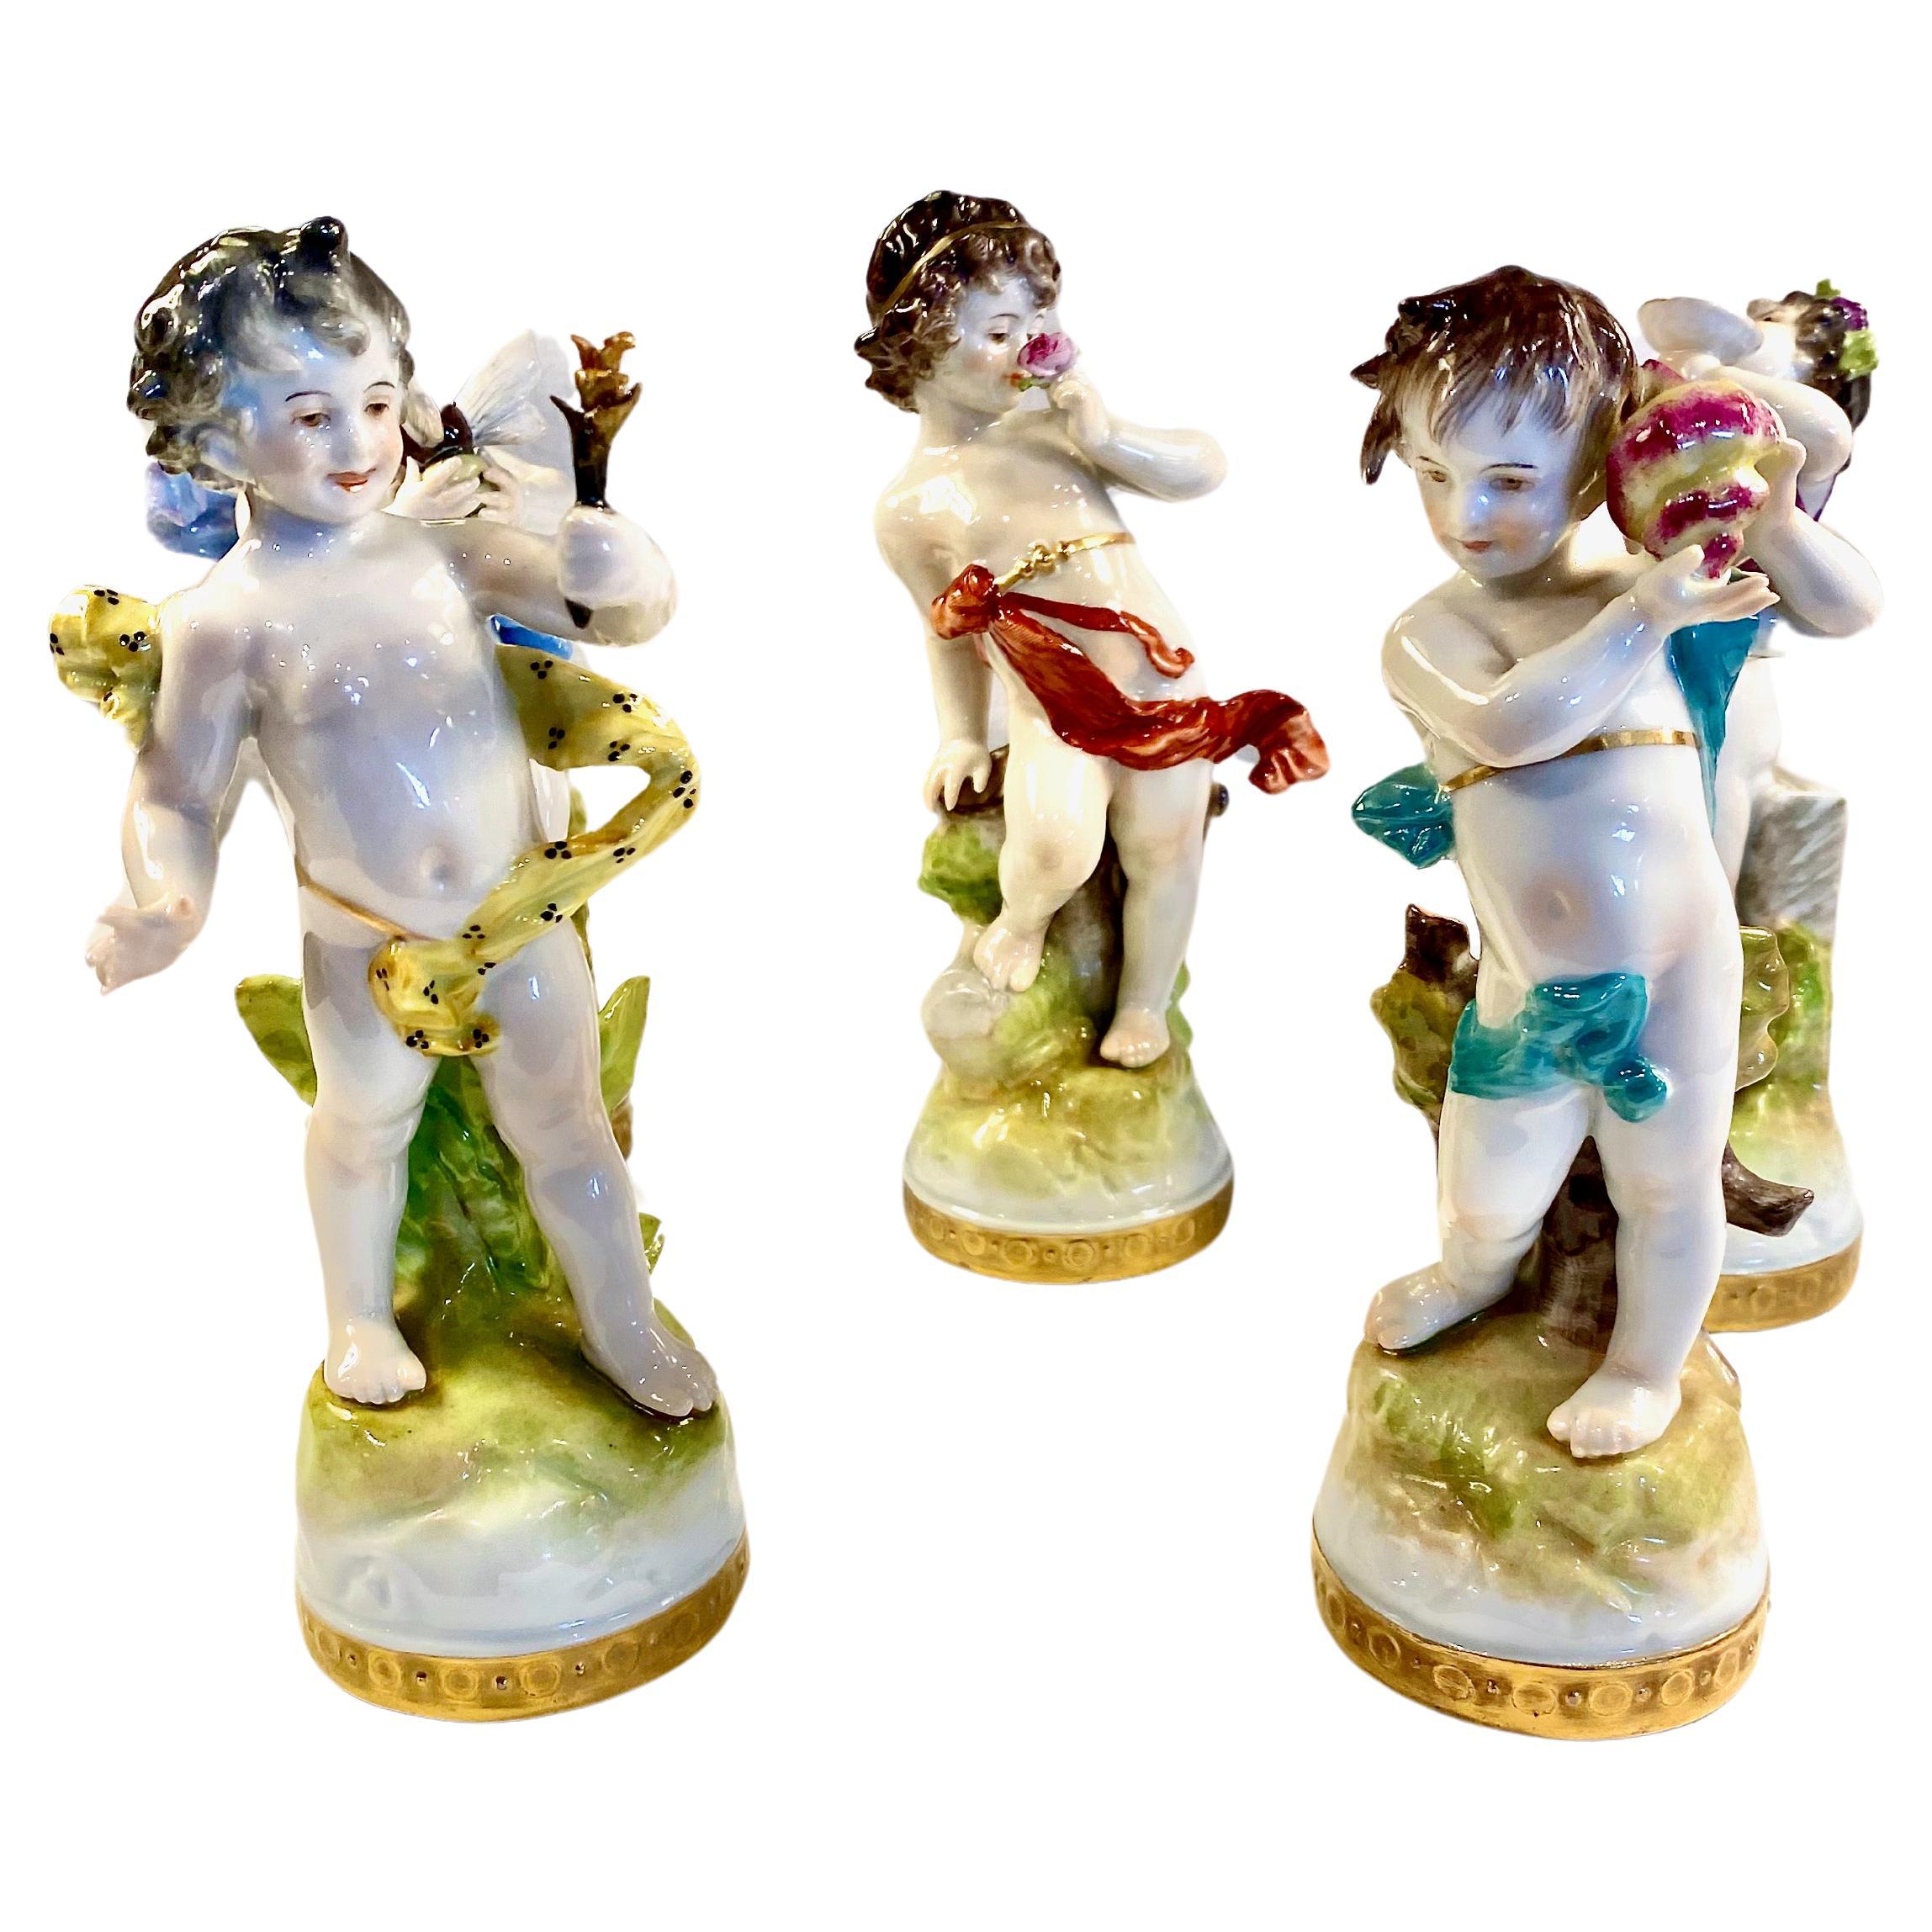 Il s'agit d'un ensemble de 5 figurines de Rudolstadt Volkstedt représentant différents putti ou cupidons. Les figurines sont magnifiquement détaillées avec des peintures à la main, des draperies à volutes et des fleurs, un coquillage et même une